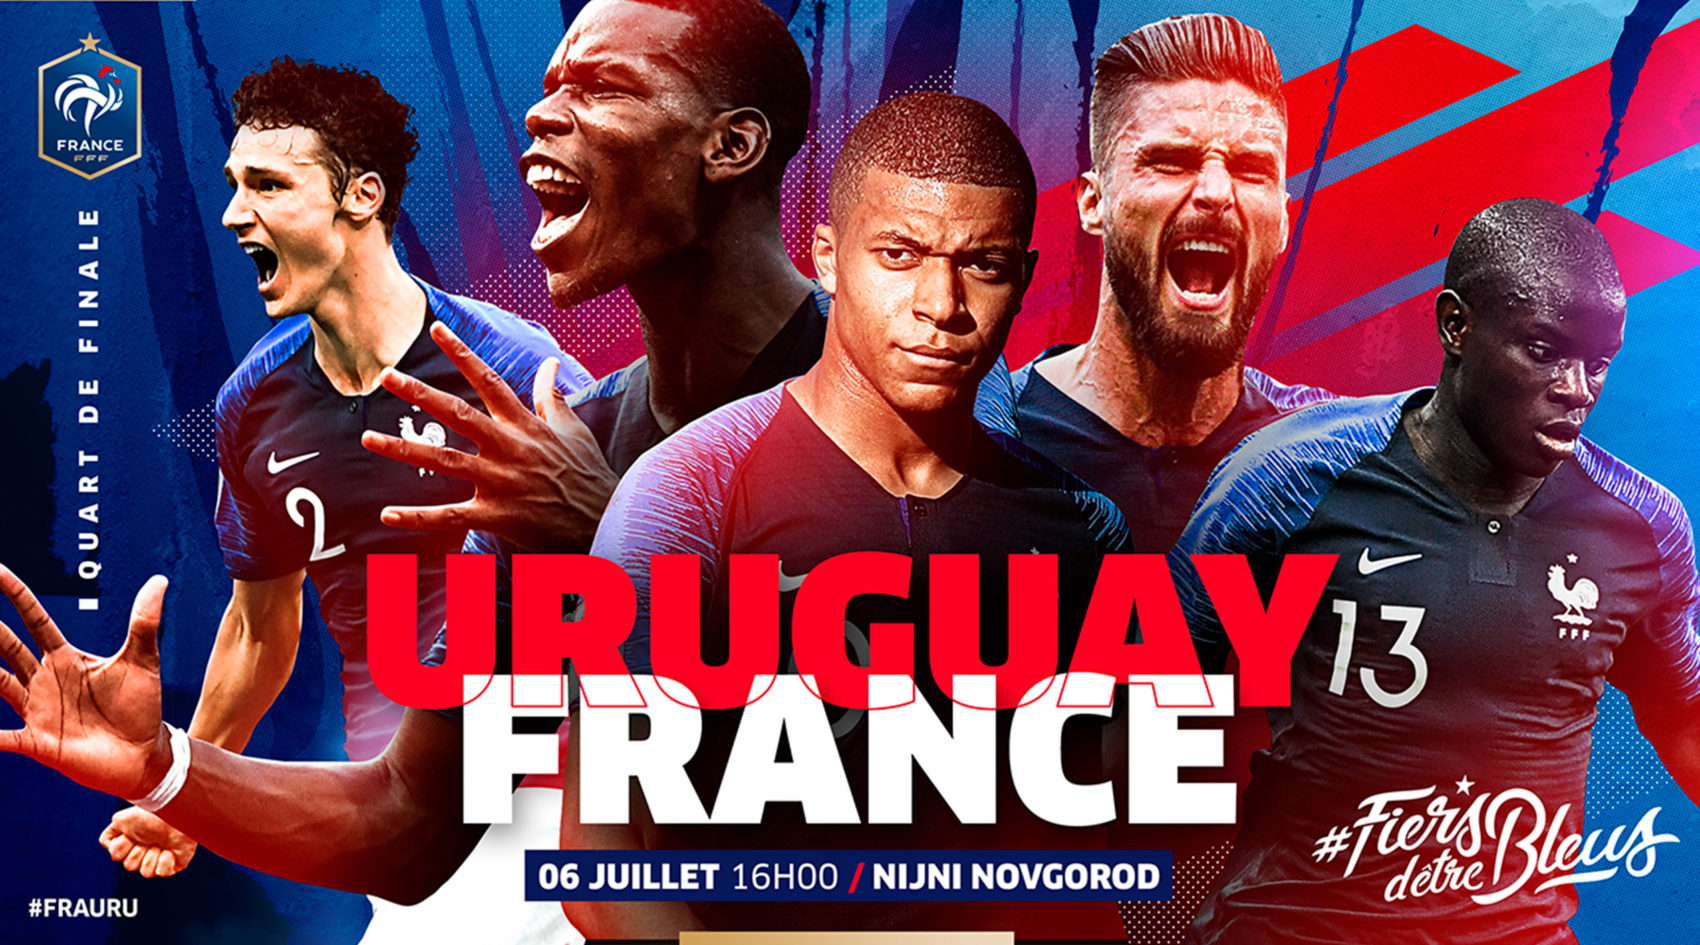 FFF_fiers_detre_bleus_federation_francaise_french_de_football_champions_monde_coupe_du_monde_world_cup